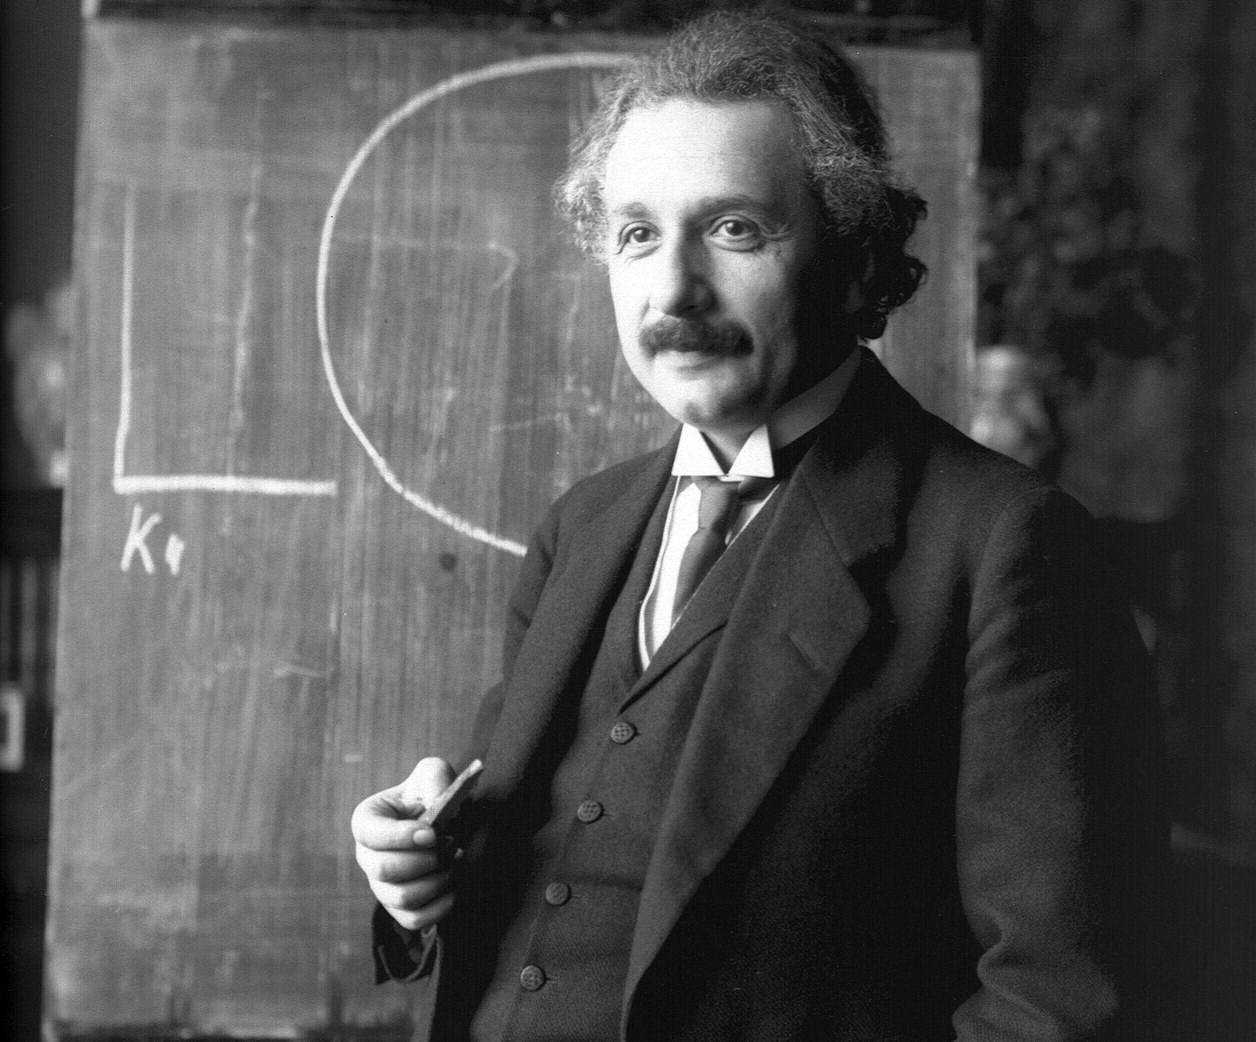 Πωλήθηκε για 11 εκατομμύρια ευρώ έγγραφο του Αϊνστάιν – Ήταν χειρόγραφο με υπολογισμούς για τη Θεωρία της Σχετικότητας